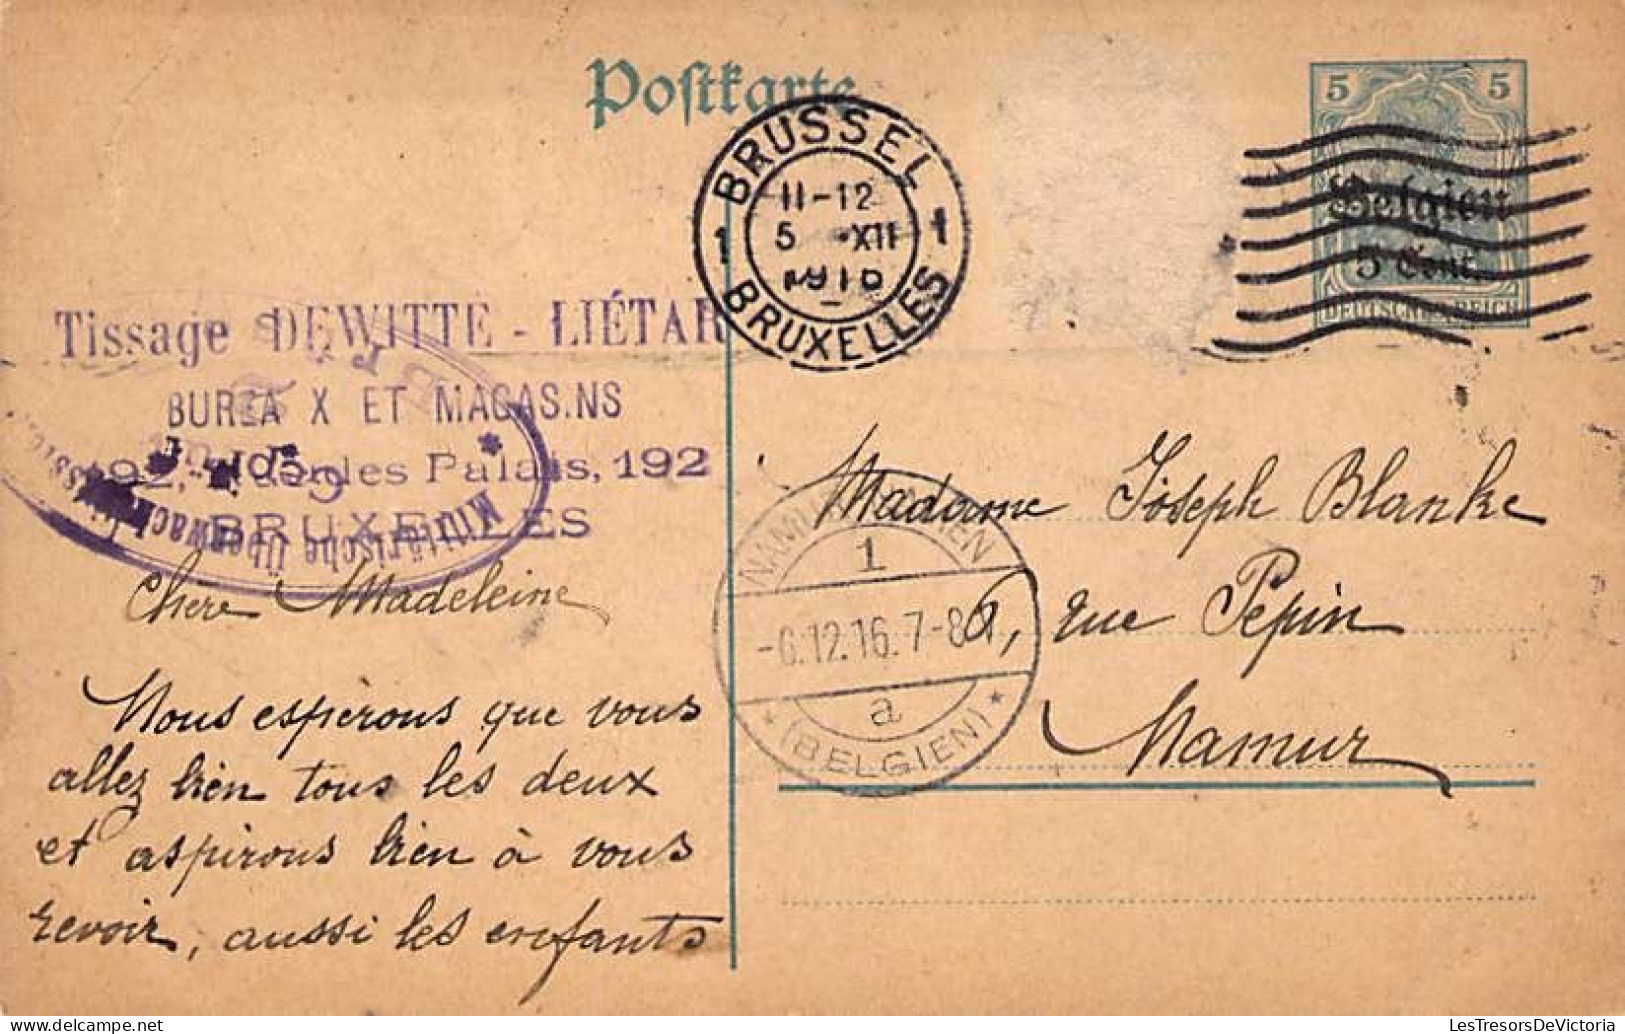 lot de 8 cartes postales anciennes - Entier postal - de 1916 à 1918 - Oblitération Namur